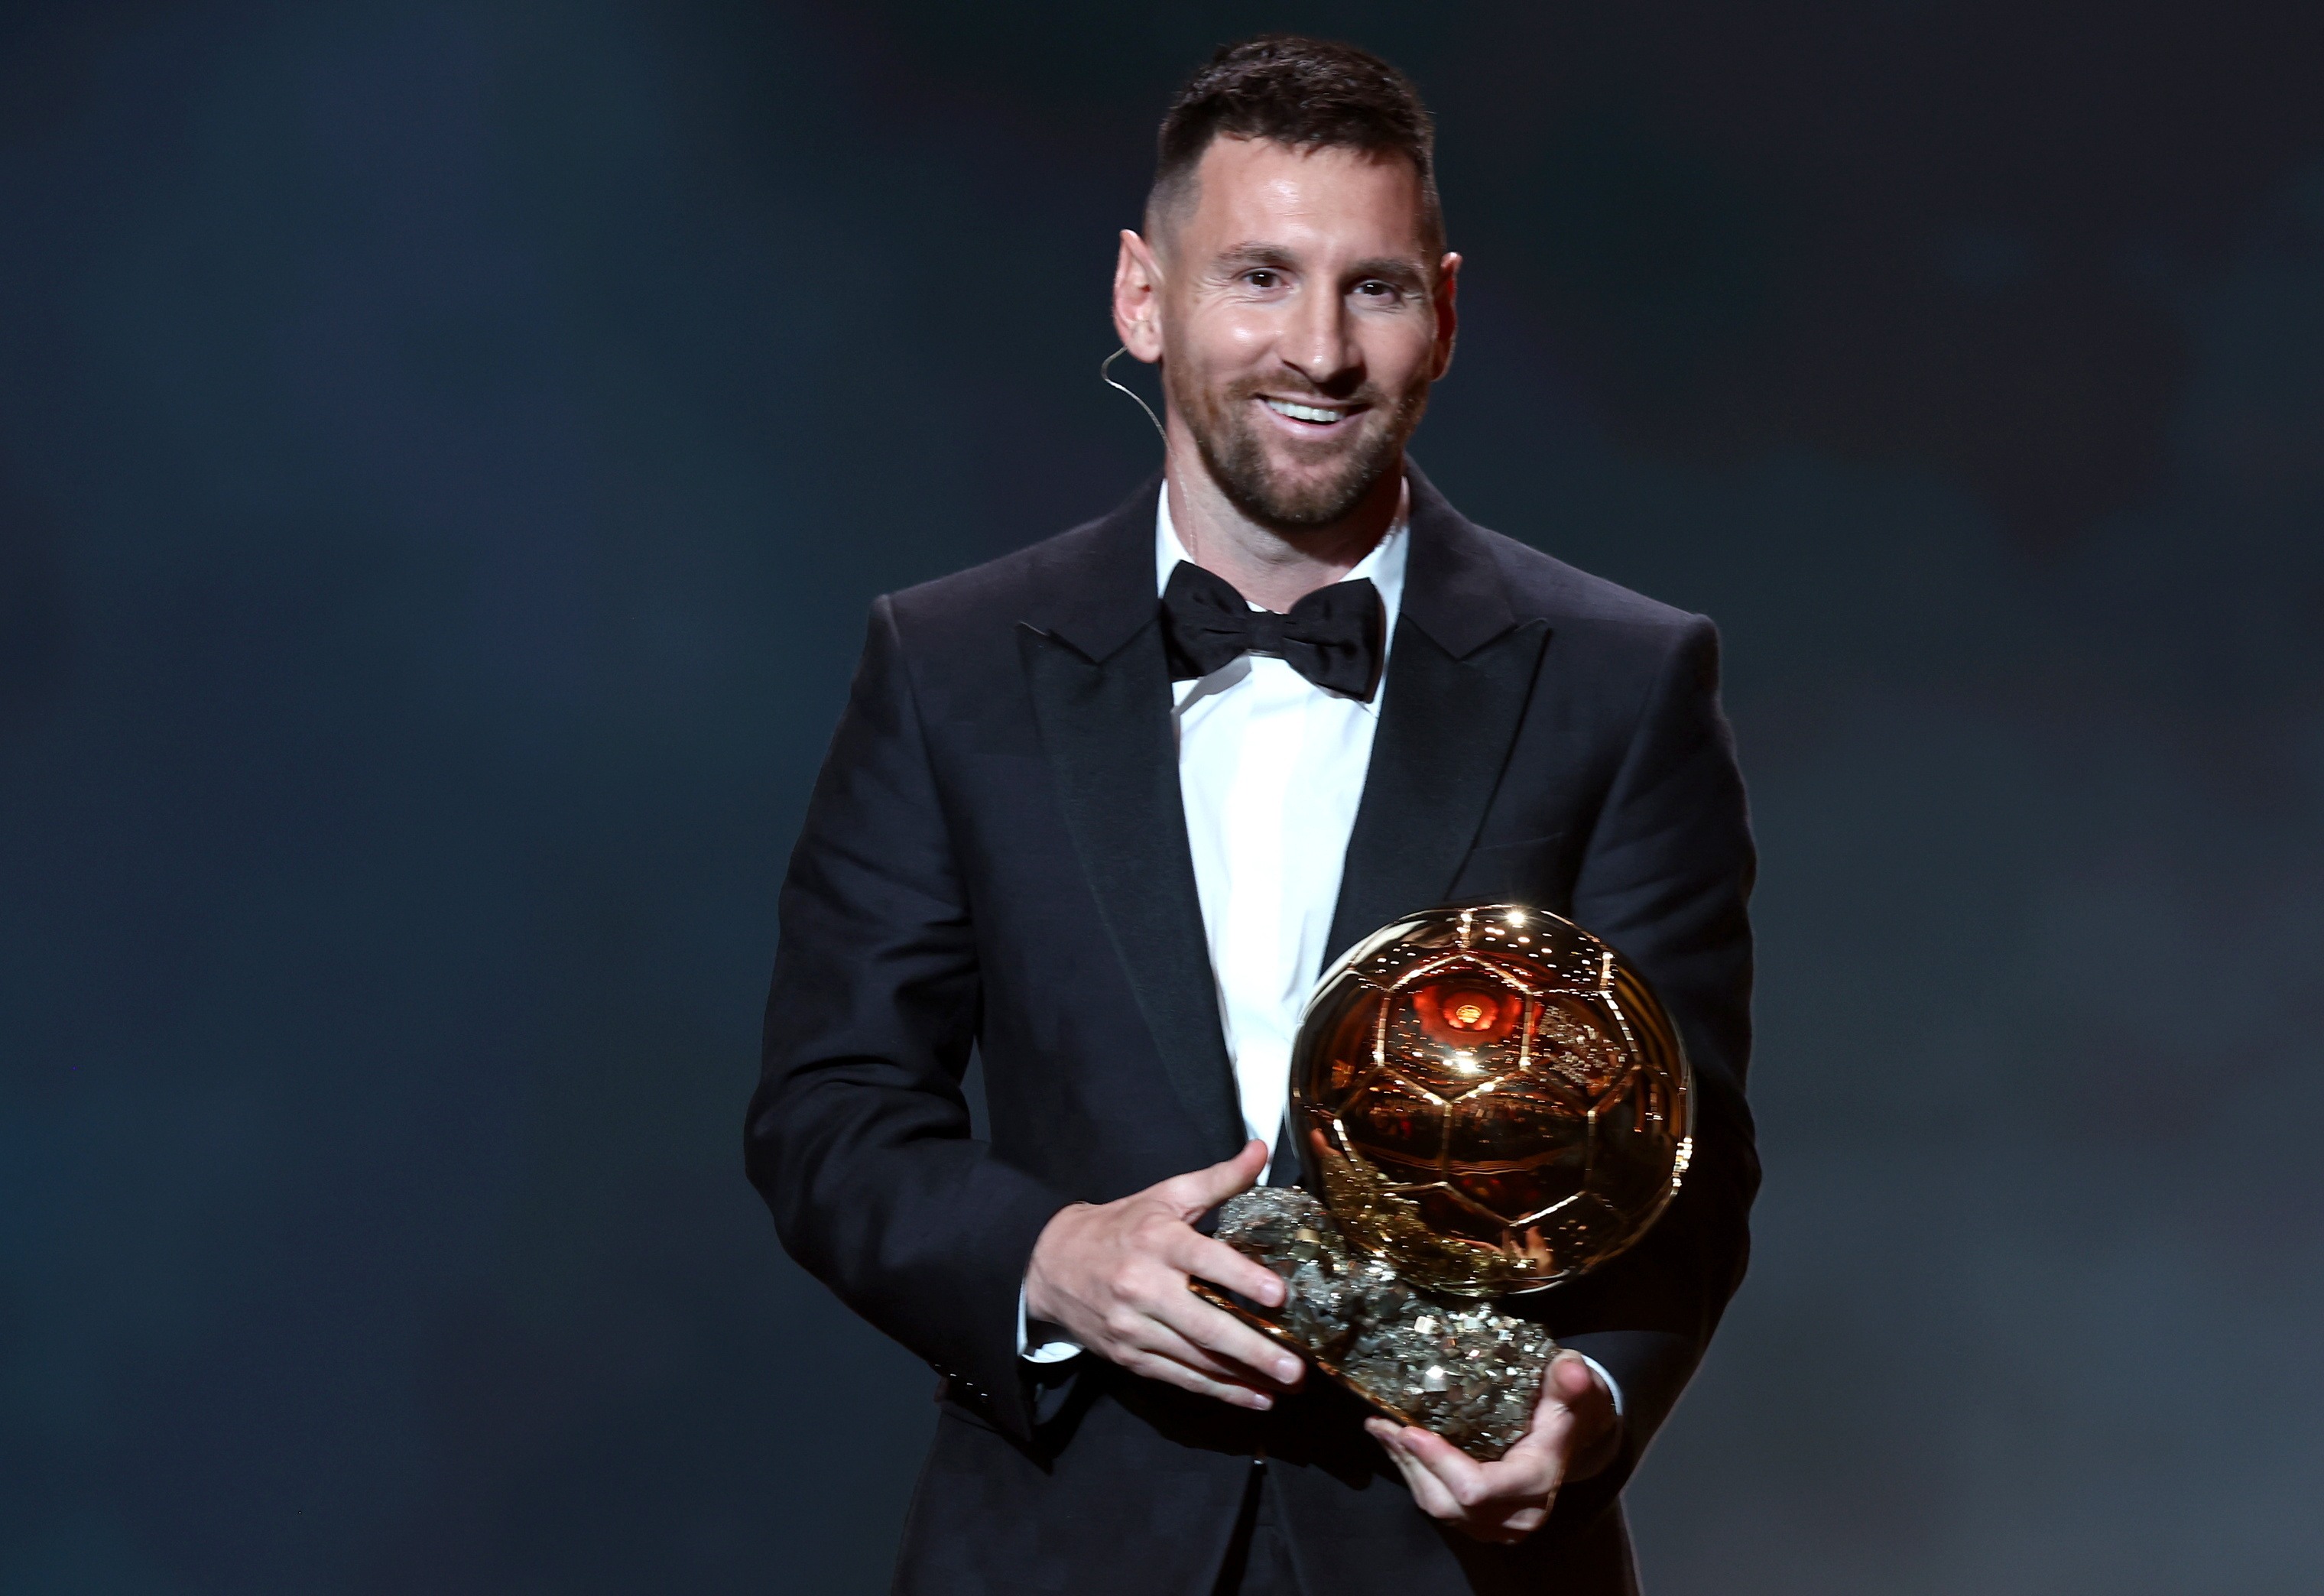 Leo Messi rep la seva 8a Pilota d'Or i amplia la llegenda del millor futbolista de tots els temps